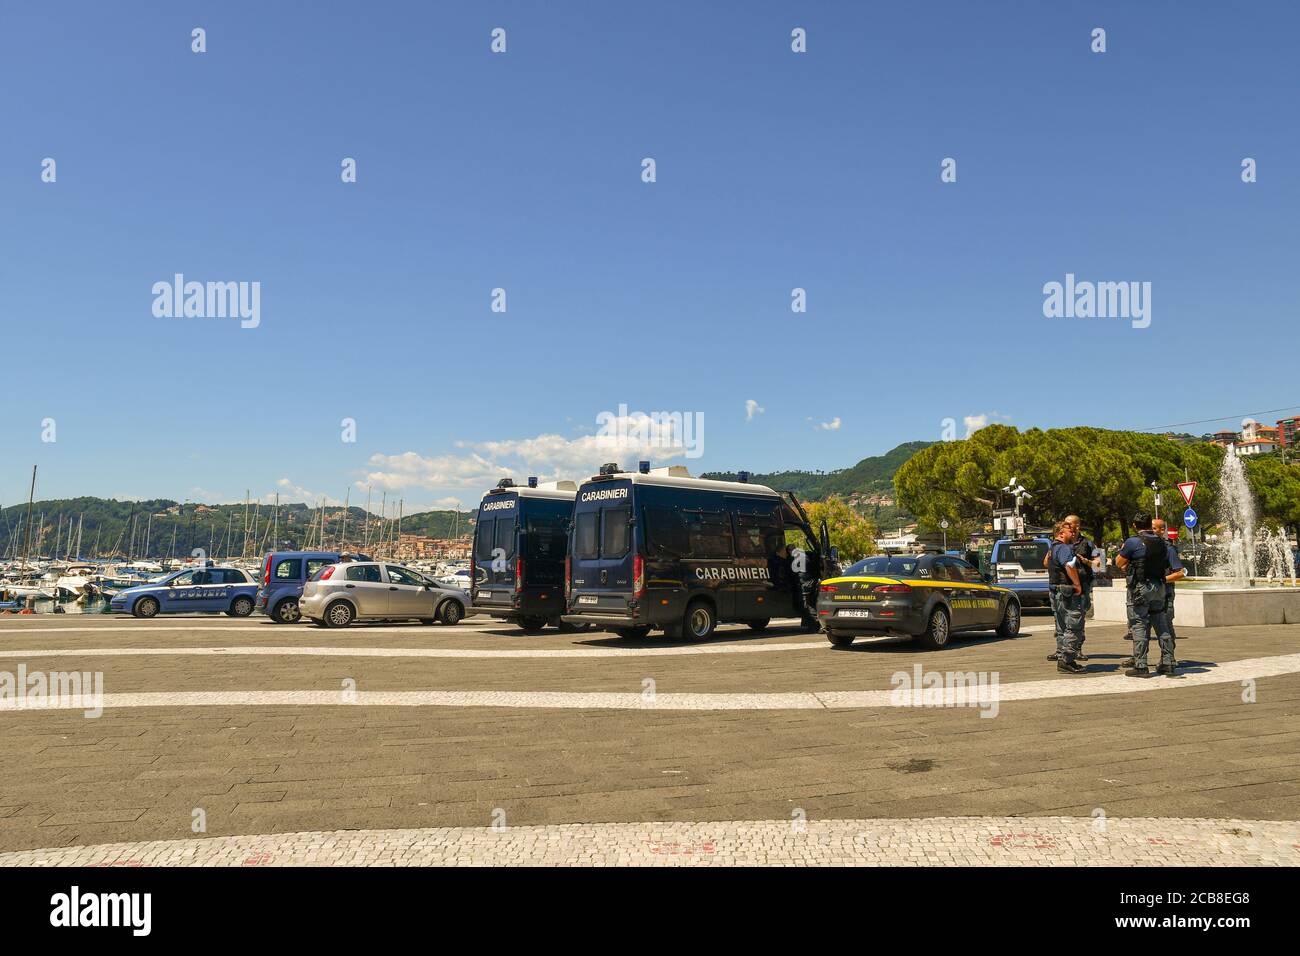 Des véhicules de police italiens et un groupe de policiers attendent l'arrivée du politicien Matteo Salvini pour un rassemblement dans la ville maritime de Lerici, en Italie Banque D'Images